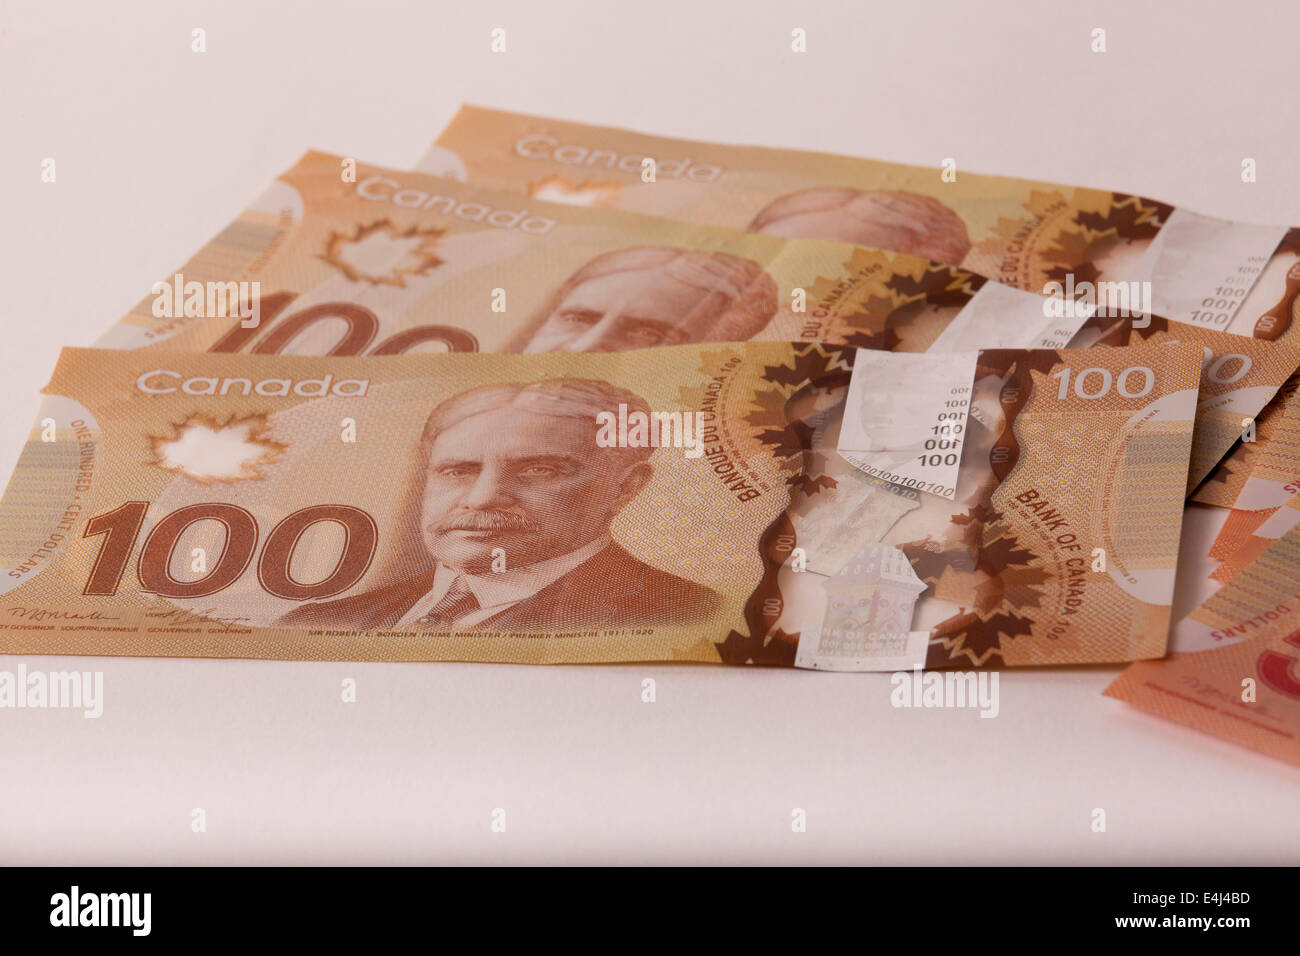 Ventola del Canada 100 fatture del dollaro Foto Stock